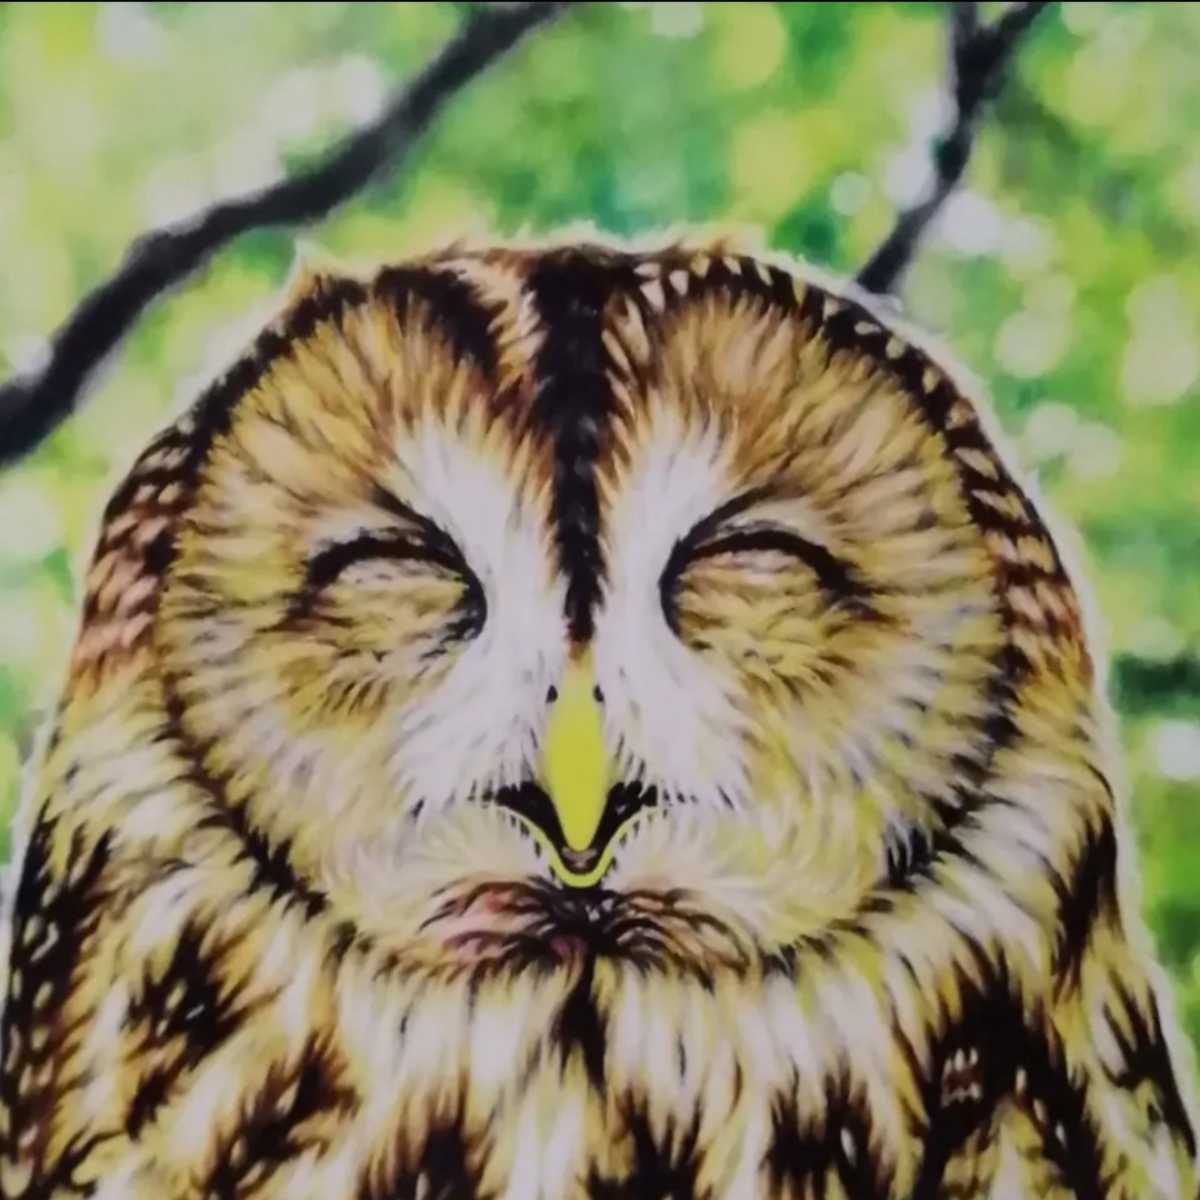 B5 手描きイラストプリント ふくろう ほのぼの モリフクロウ 可愛い 幸運のシンボル 招福 森 猛禽類 癒し 笑顔 絵 縁起 鳥 25 Off 絵